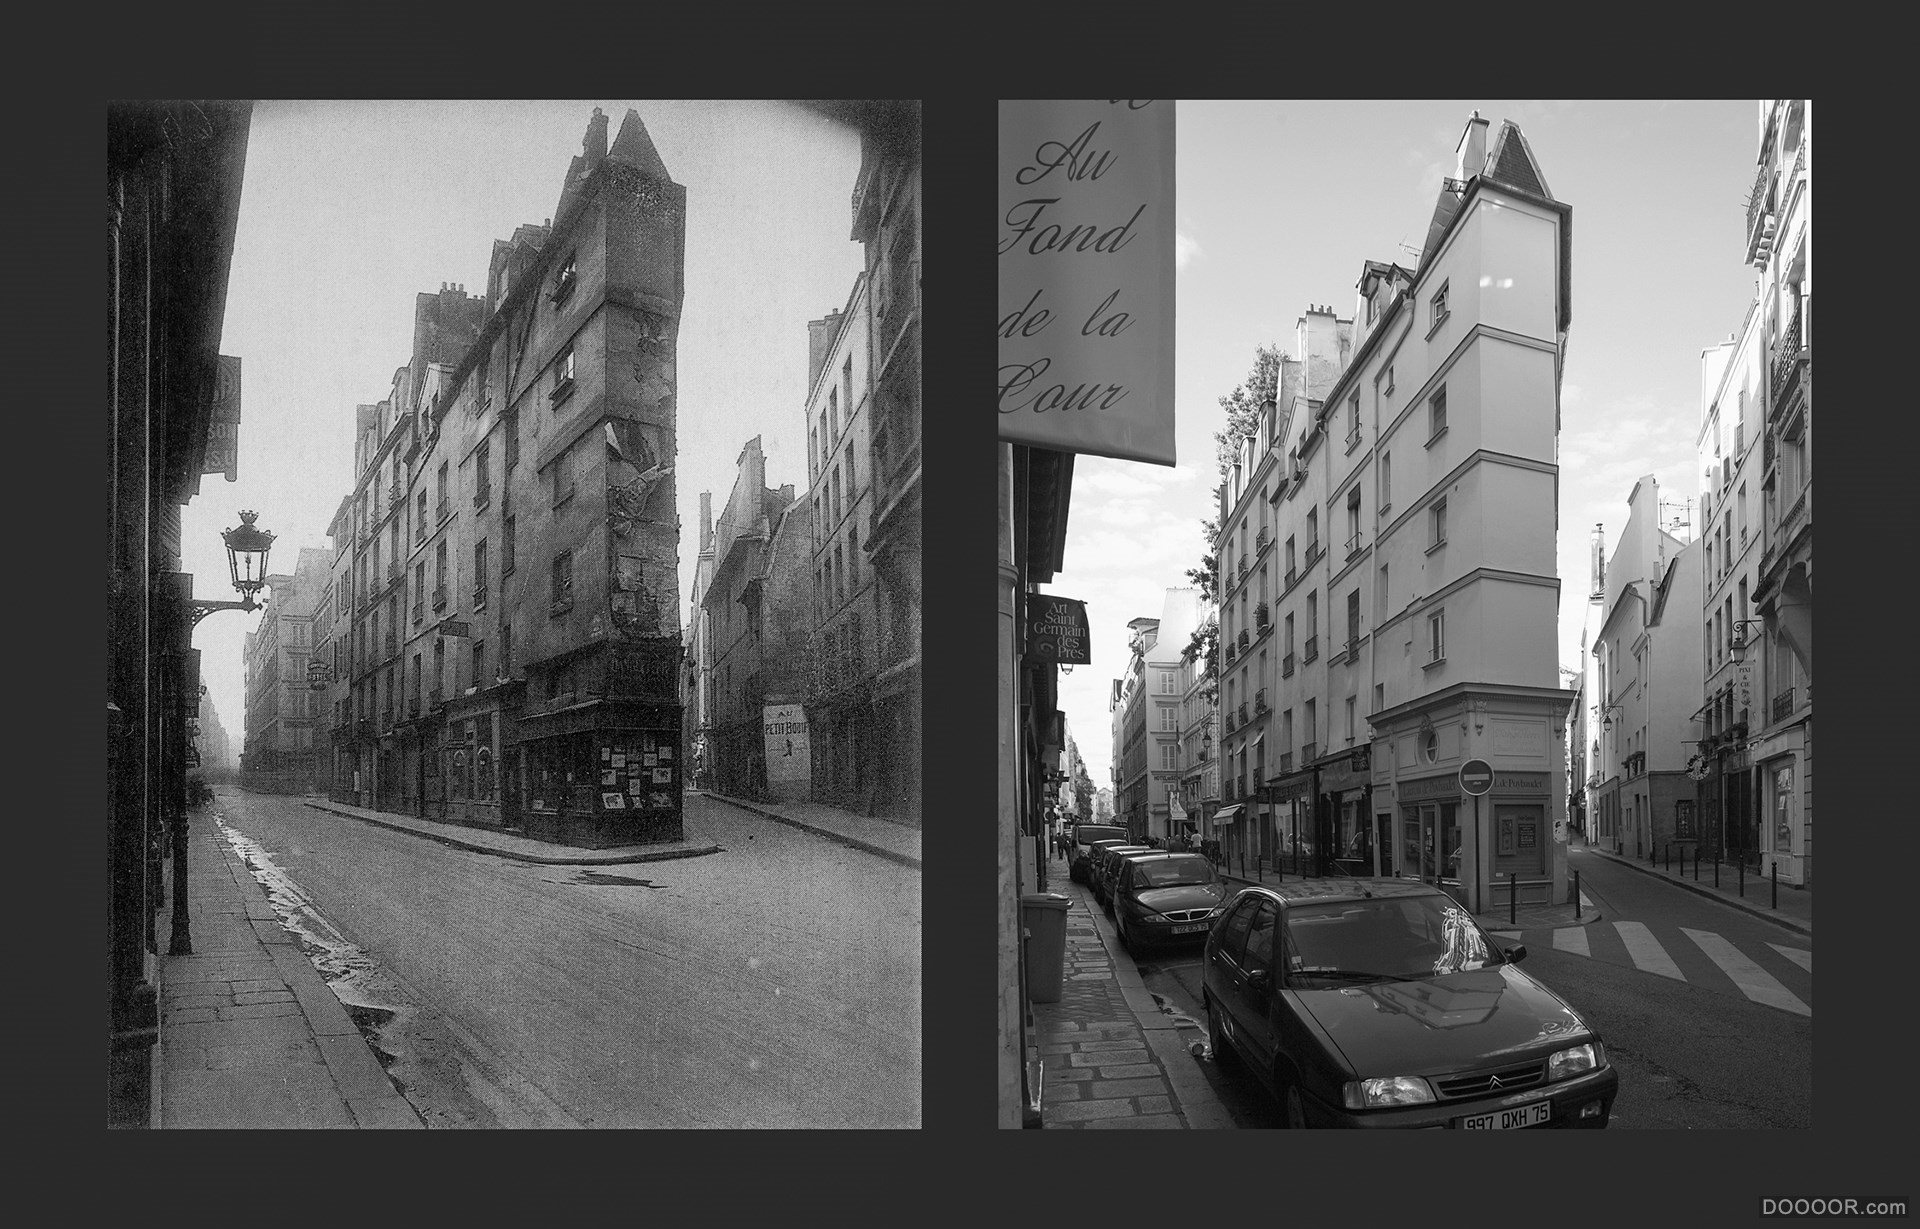 过去与现在-巴黎街头照片对比 [50P] (21).jpg